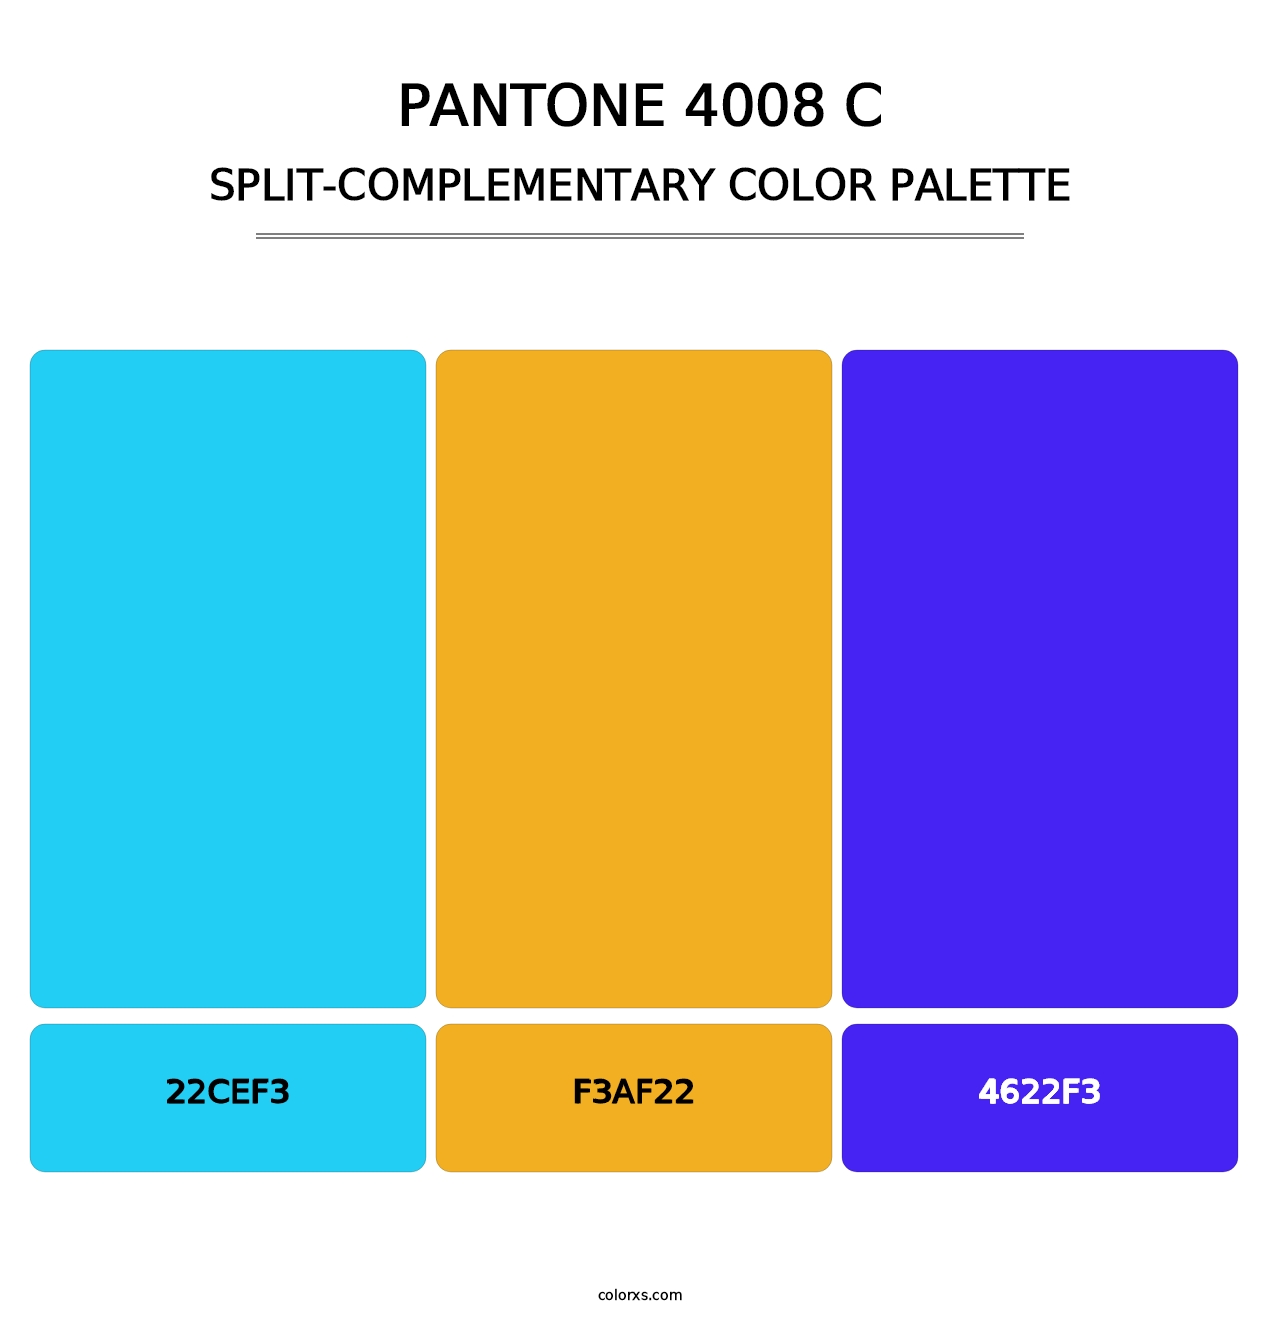 PANTONE 4008 C - Split-Complementary Color Palette